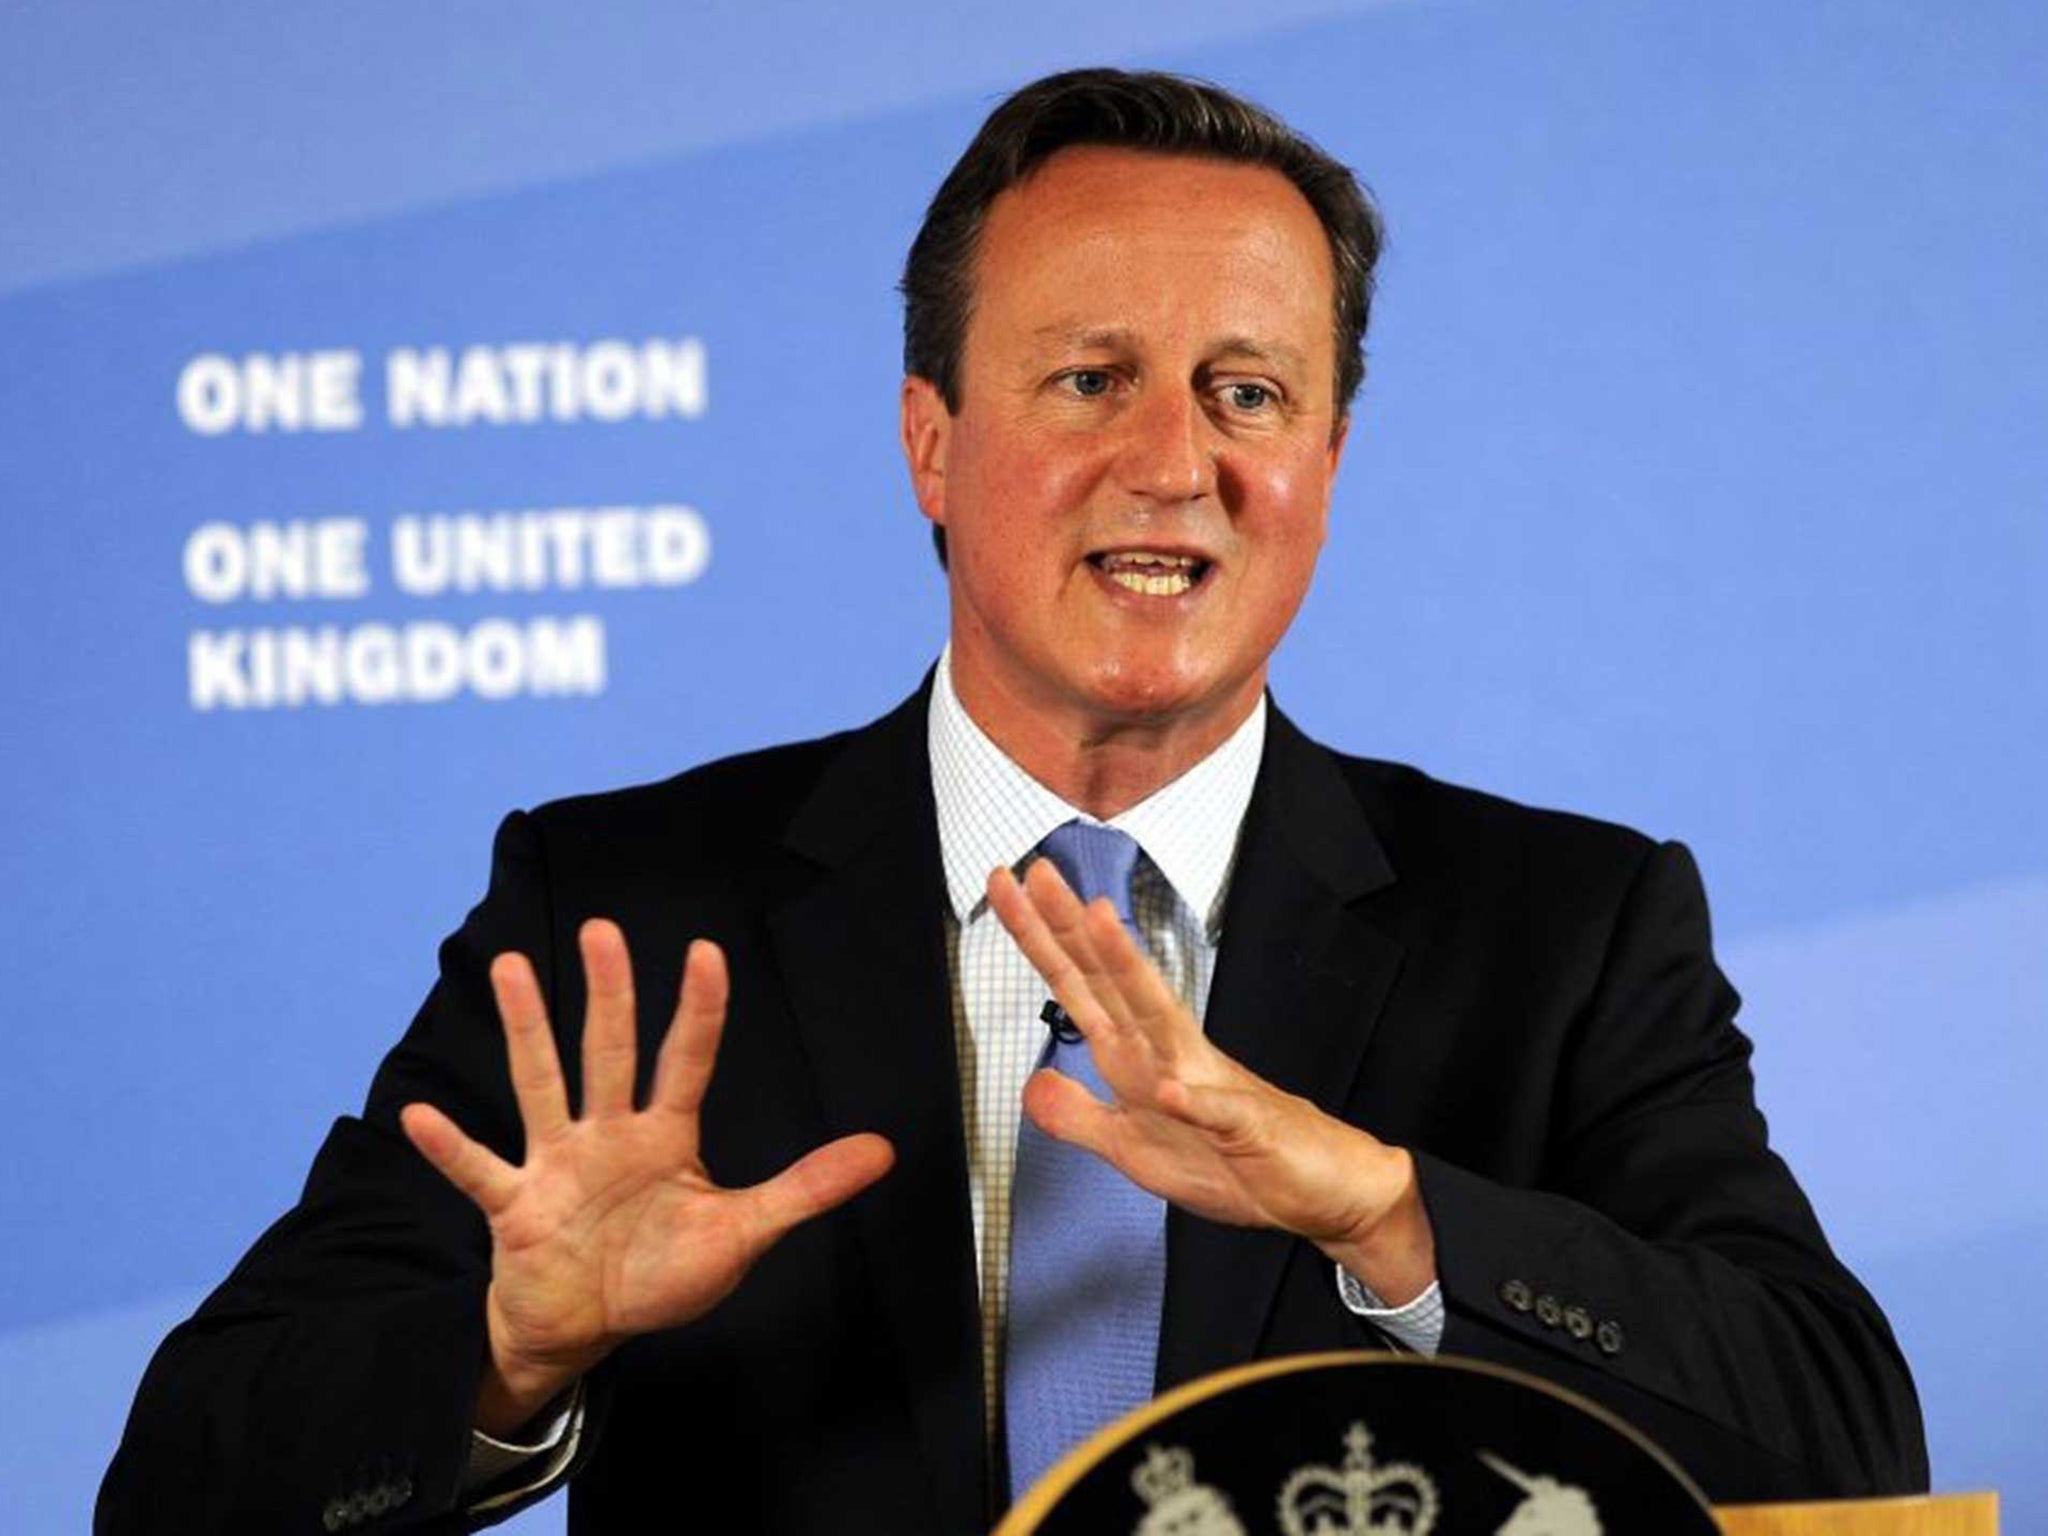 David Cameron speaking in Leeds